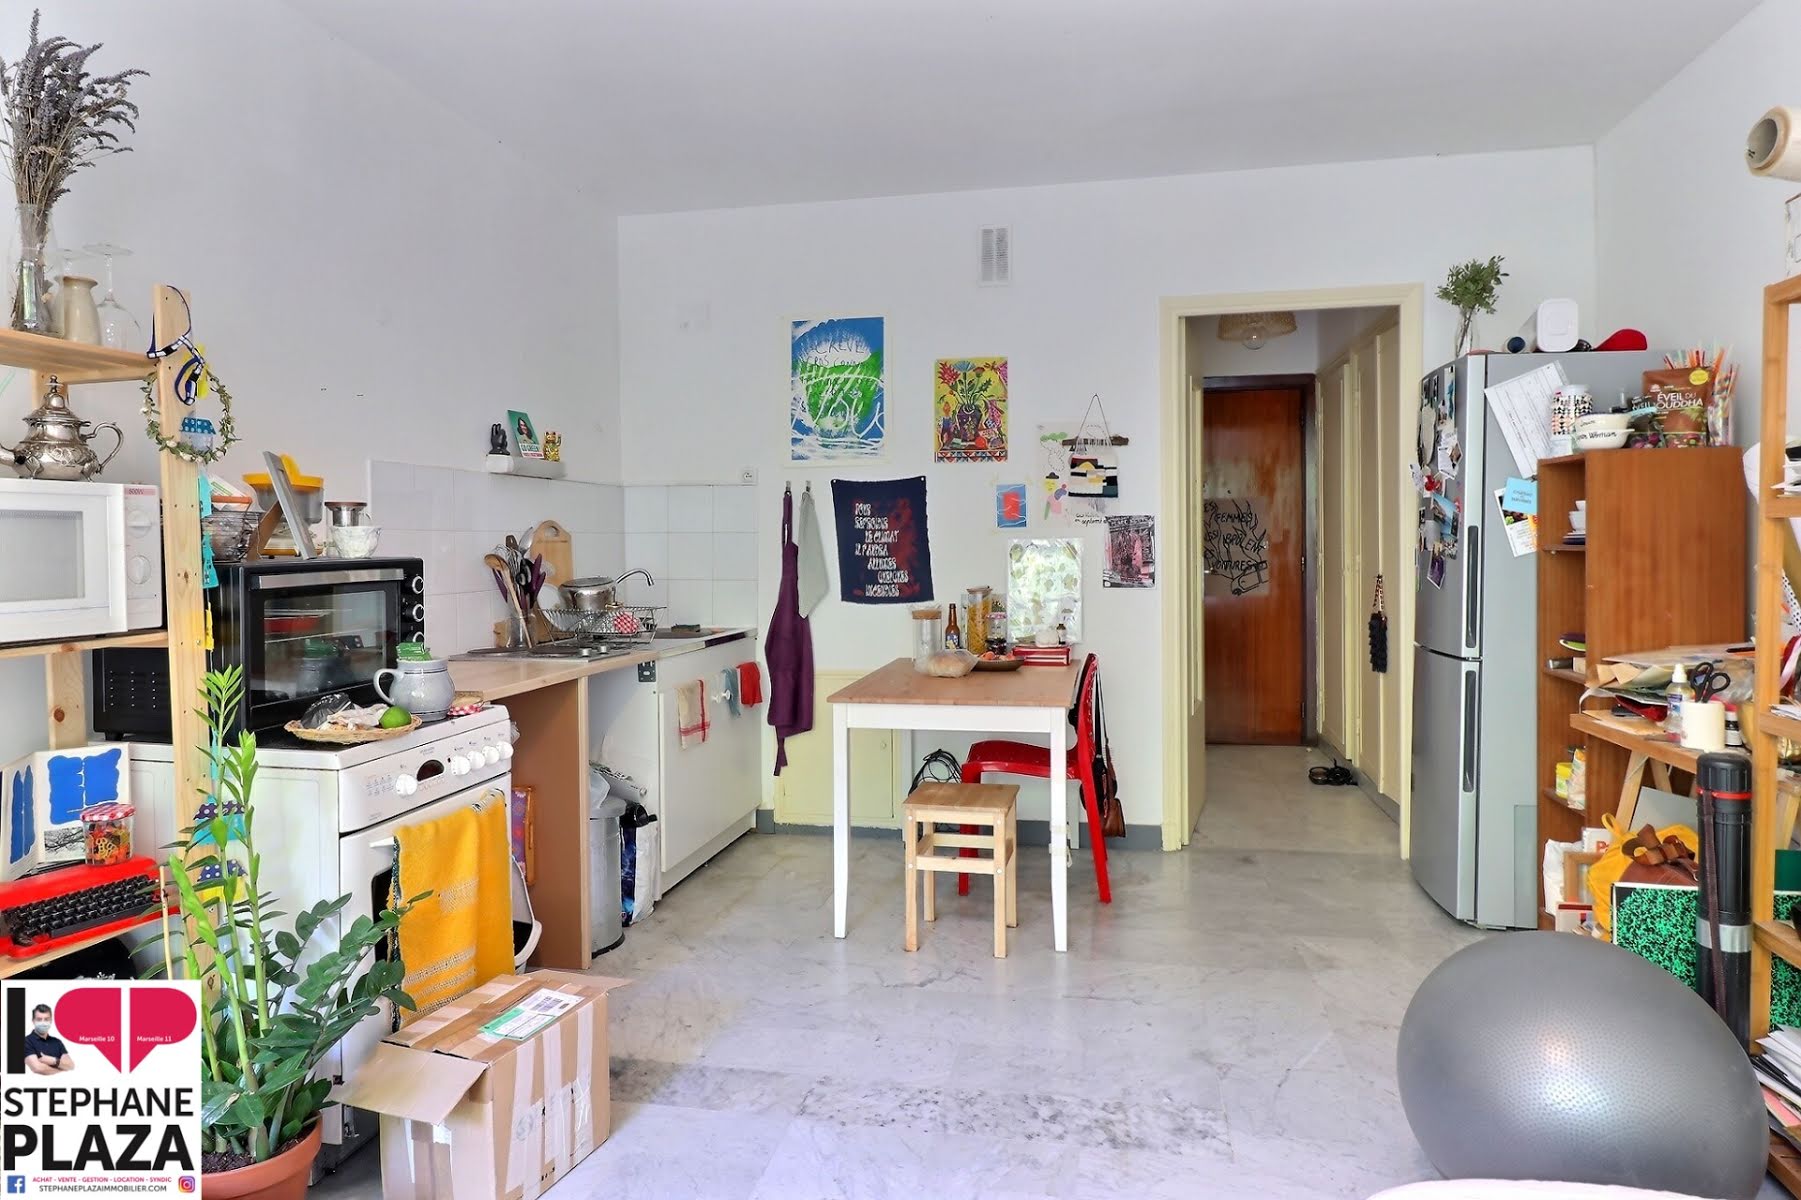 Location studio 28 m2